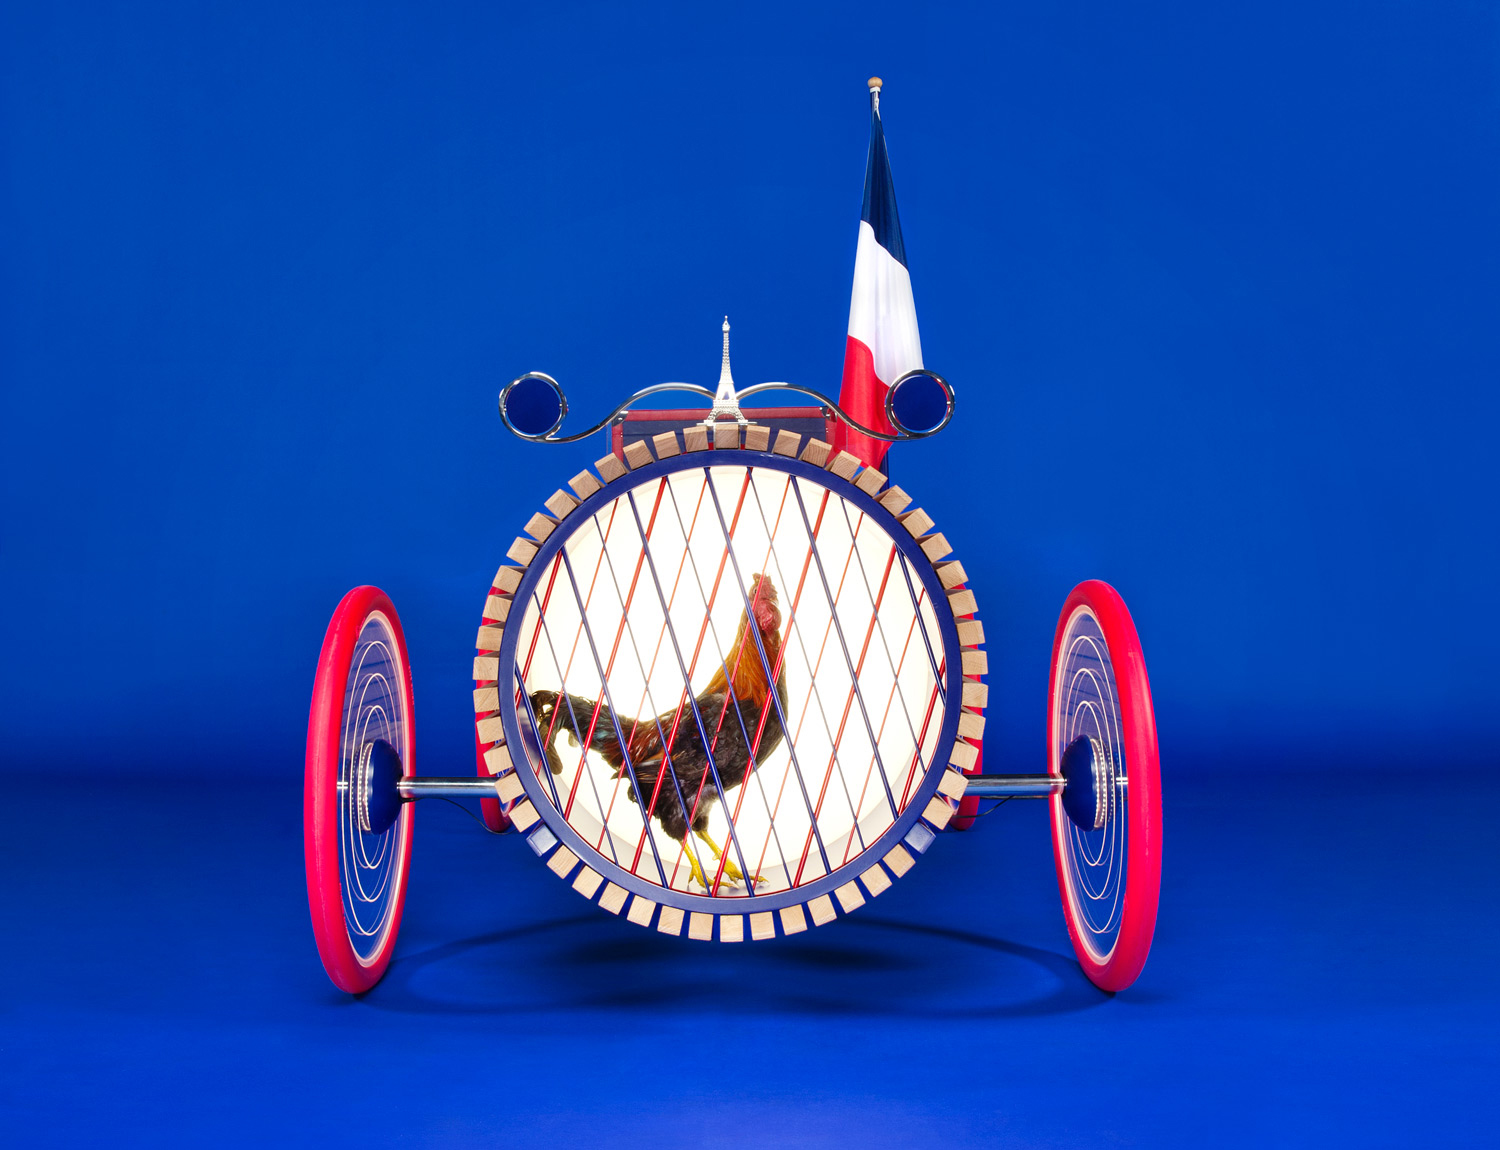  Renault miniature car dealership Exposition Atelier Paris 2014 